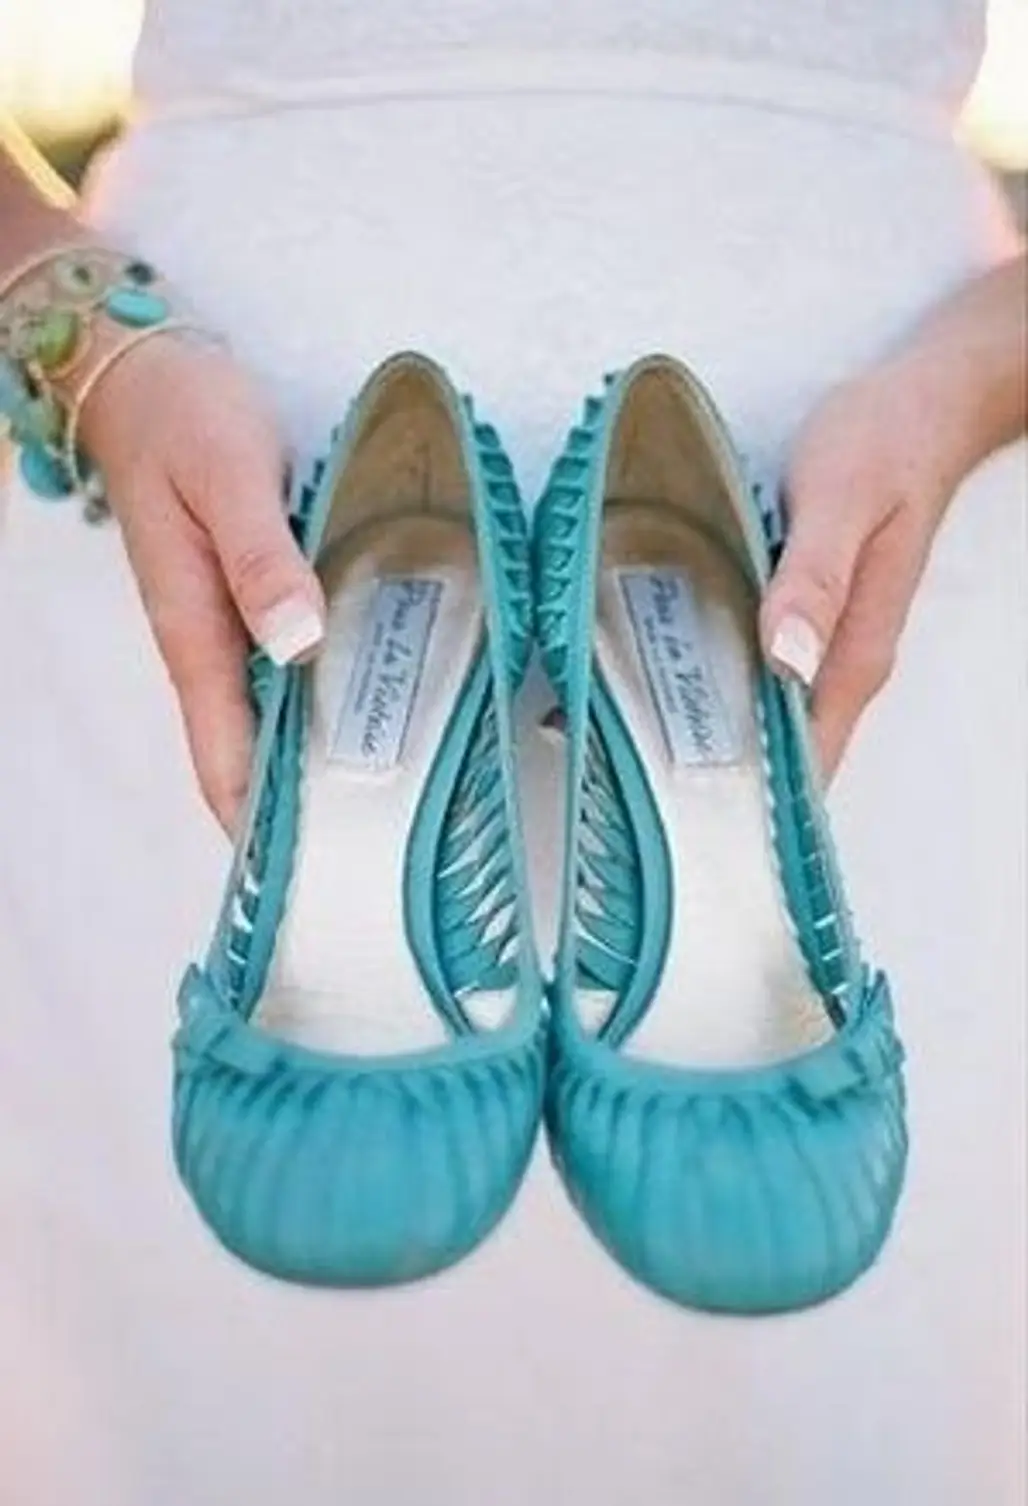 footwear,shoe,turquoise,aqua,product,